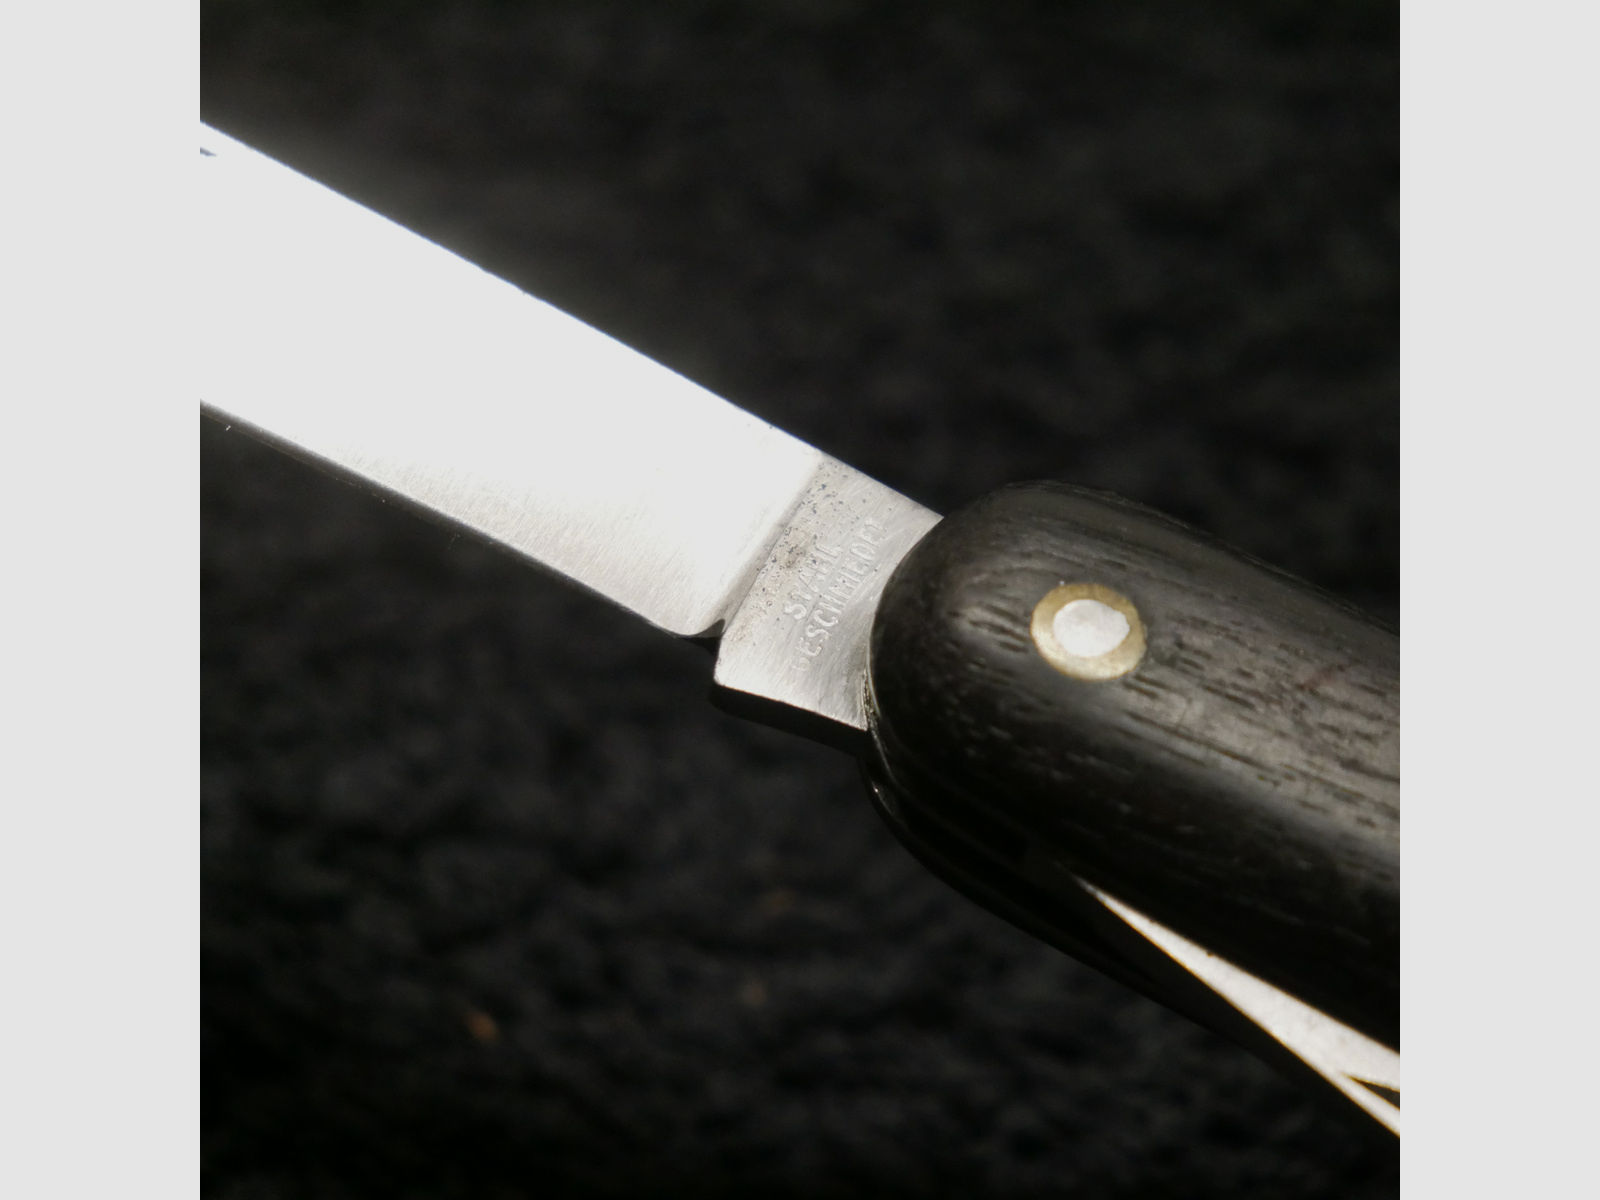 Klappmesser Stahl geschmiedet Seglermesser 3-teilig vintage